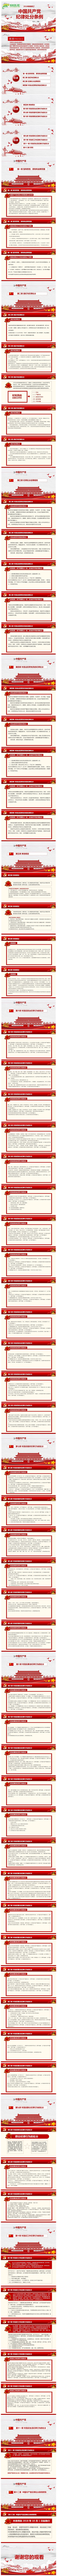 2018年最新修订中国共产党纪律处分条例PPT